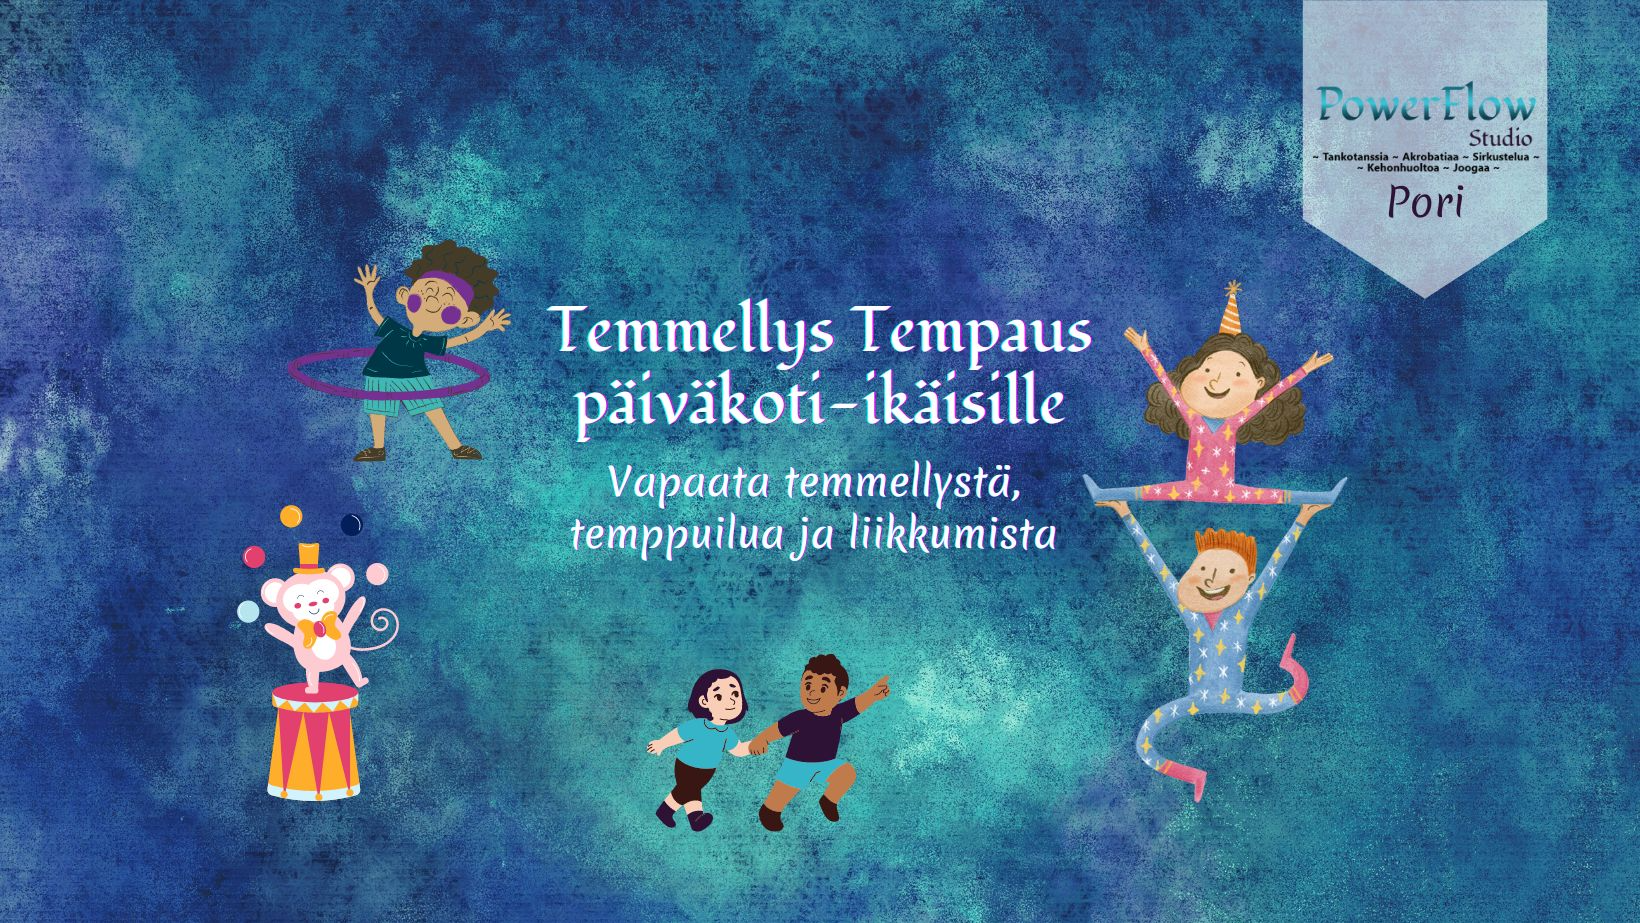 Temmellys Tempaus päiväkoti-ikäisille to 22.6. klo 16.30-17.45 / Pori